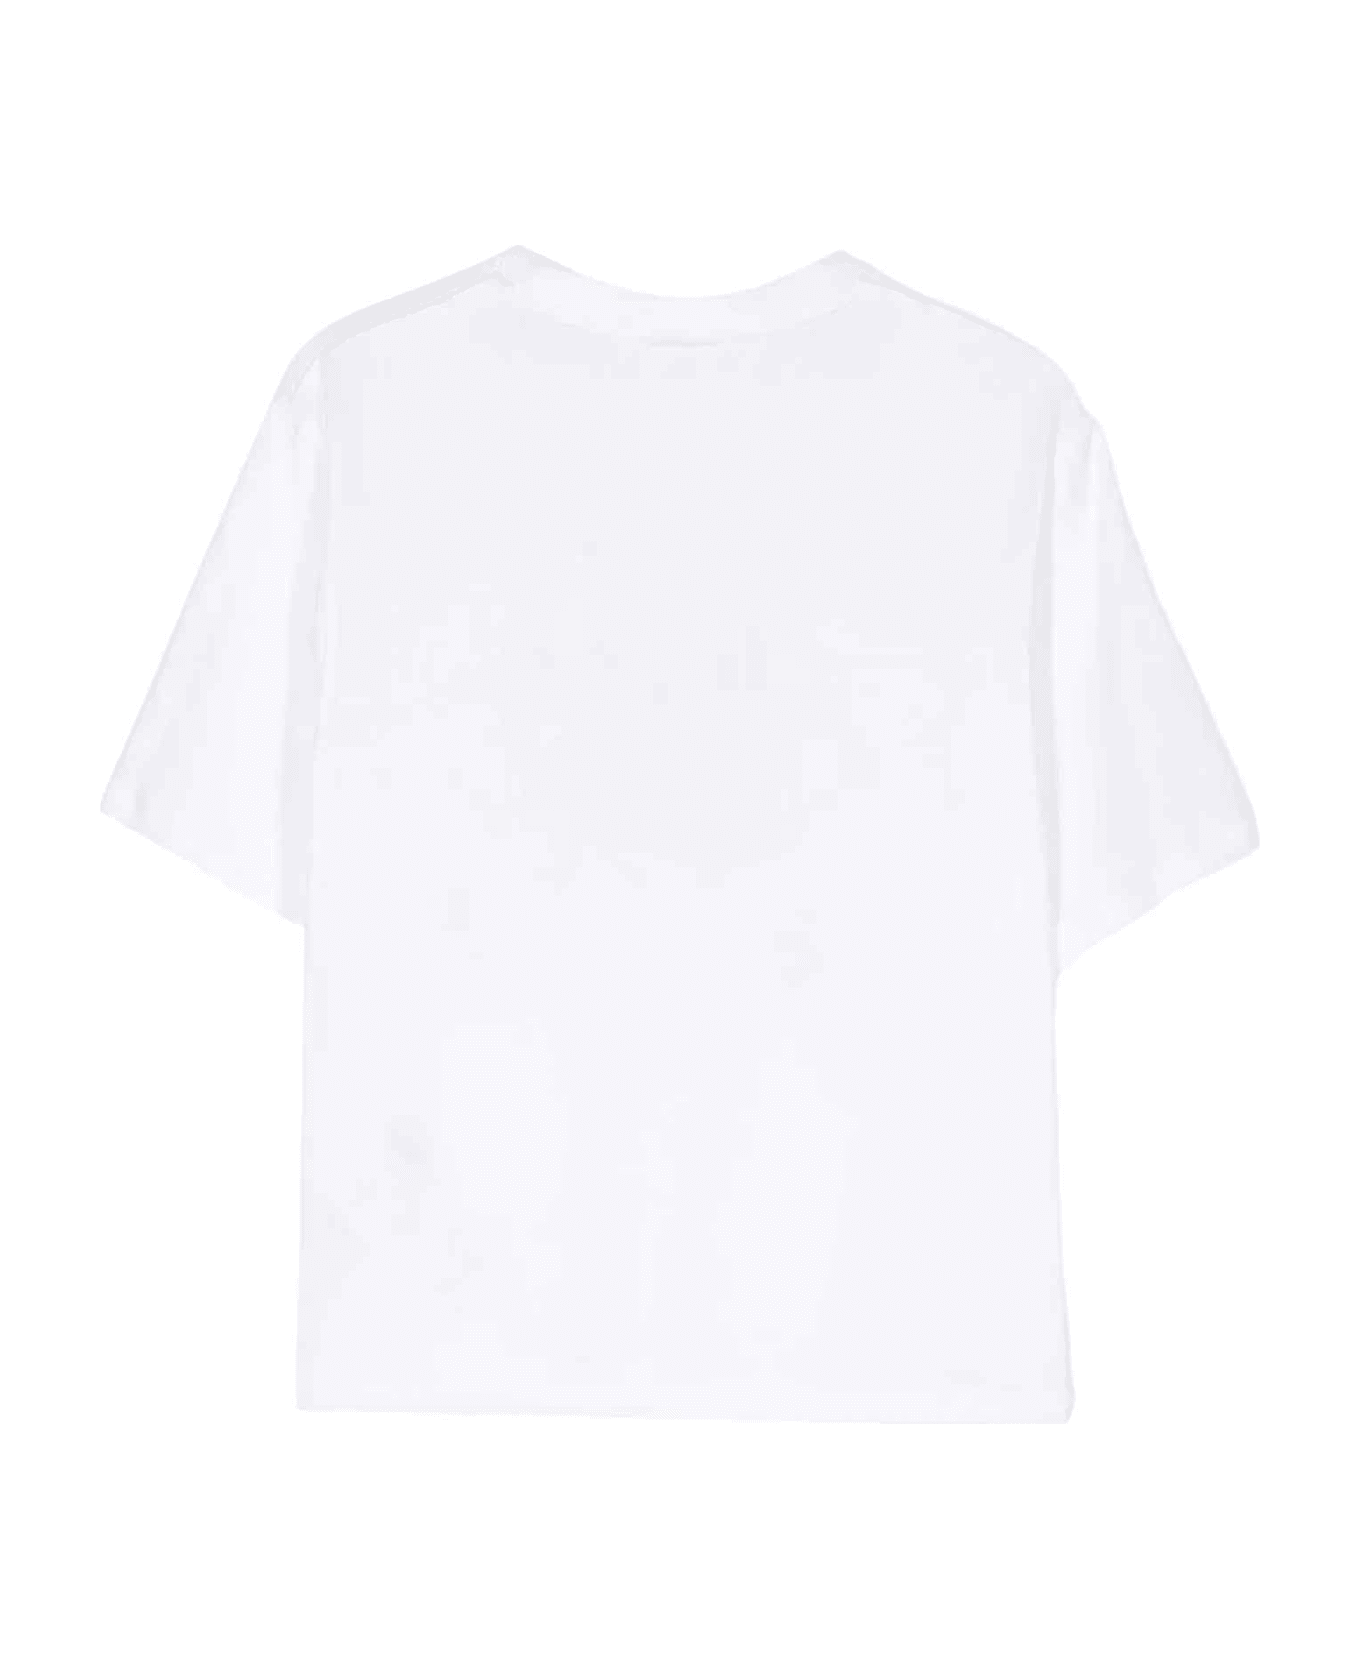 GCDS Mini White T-shirt Unisex - Bianco Ottico